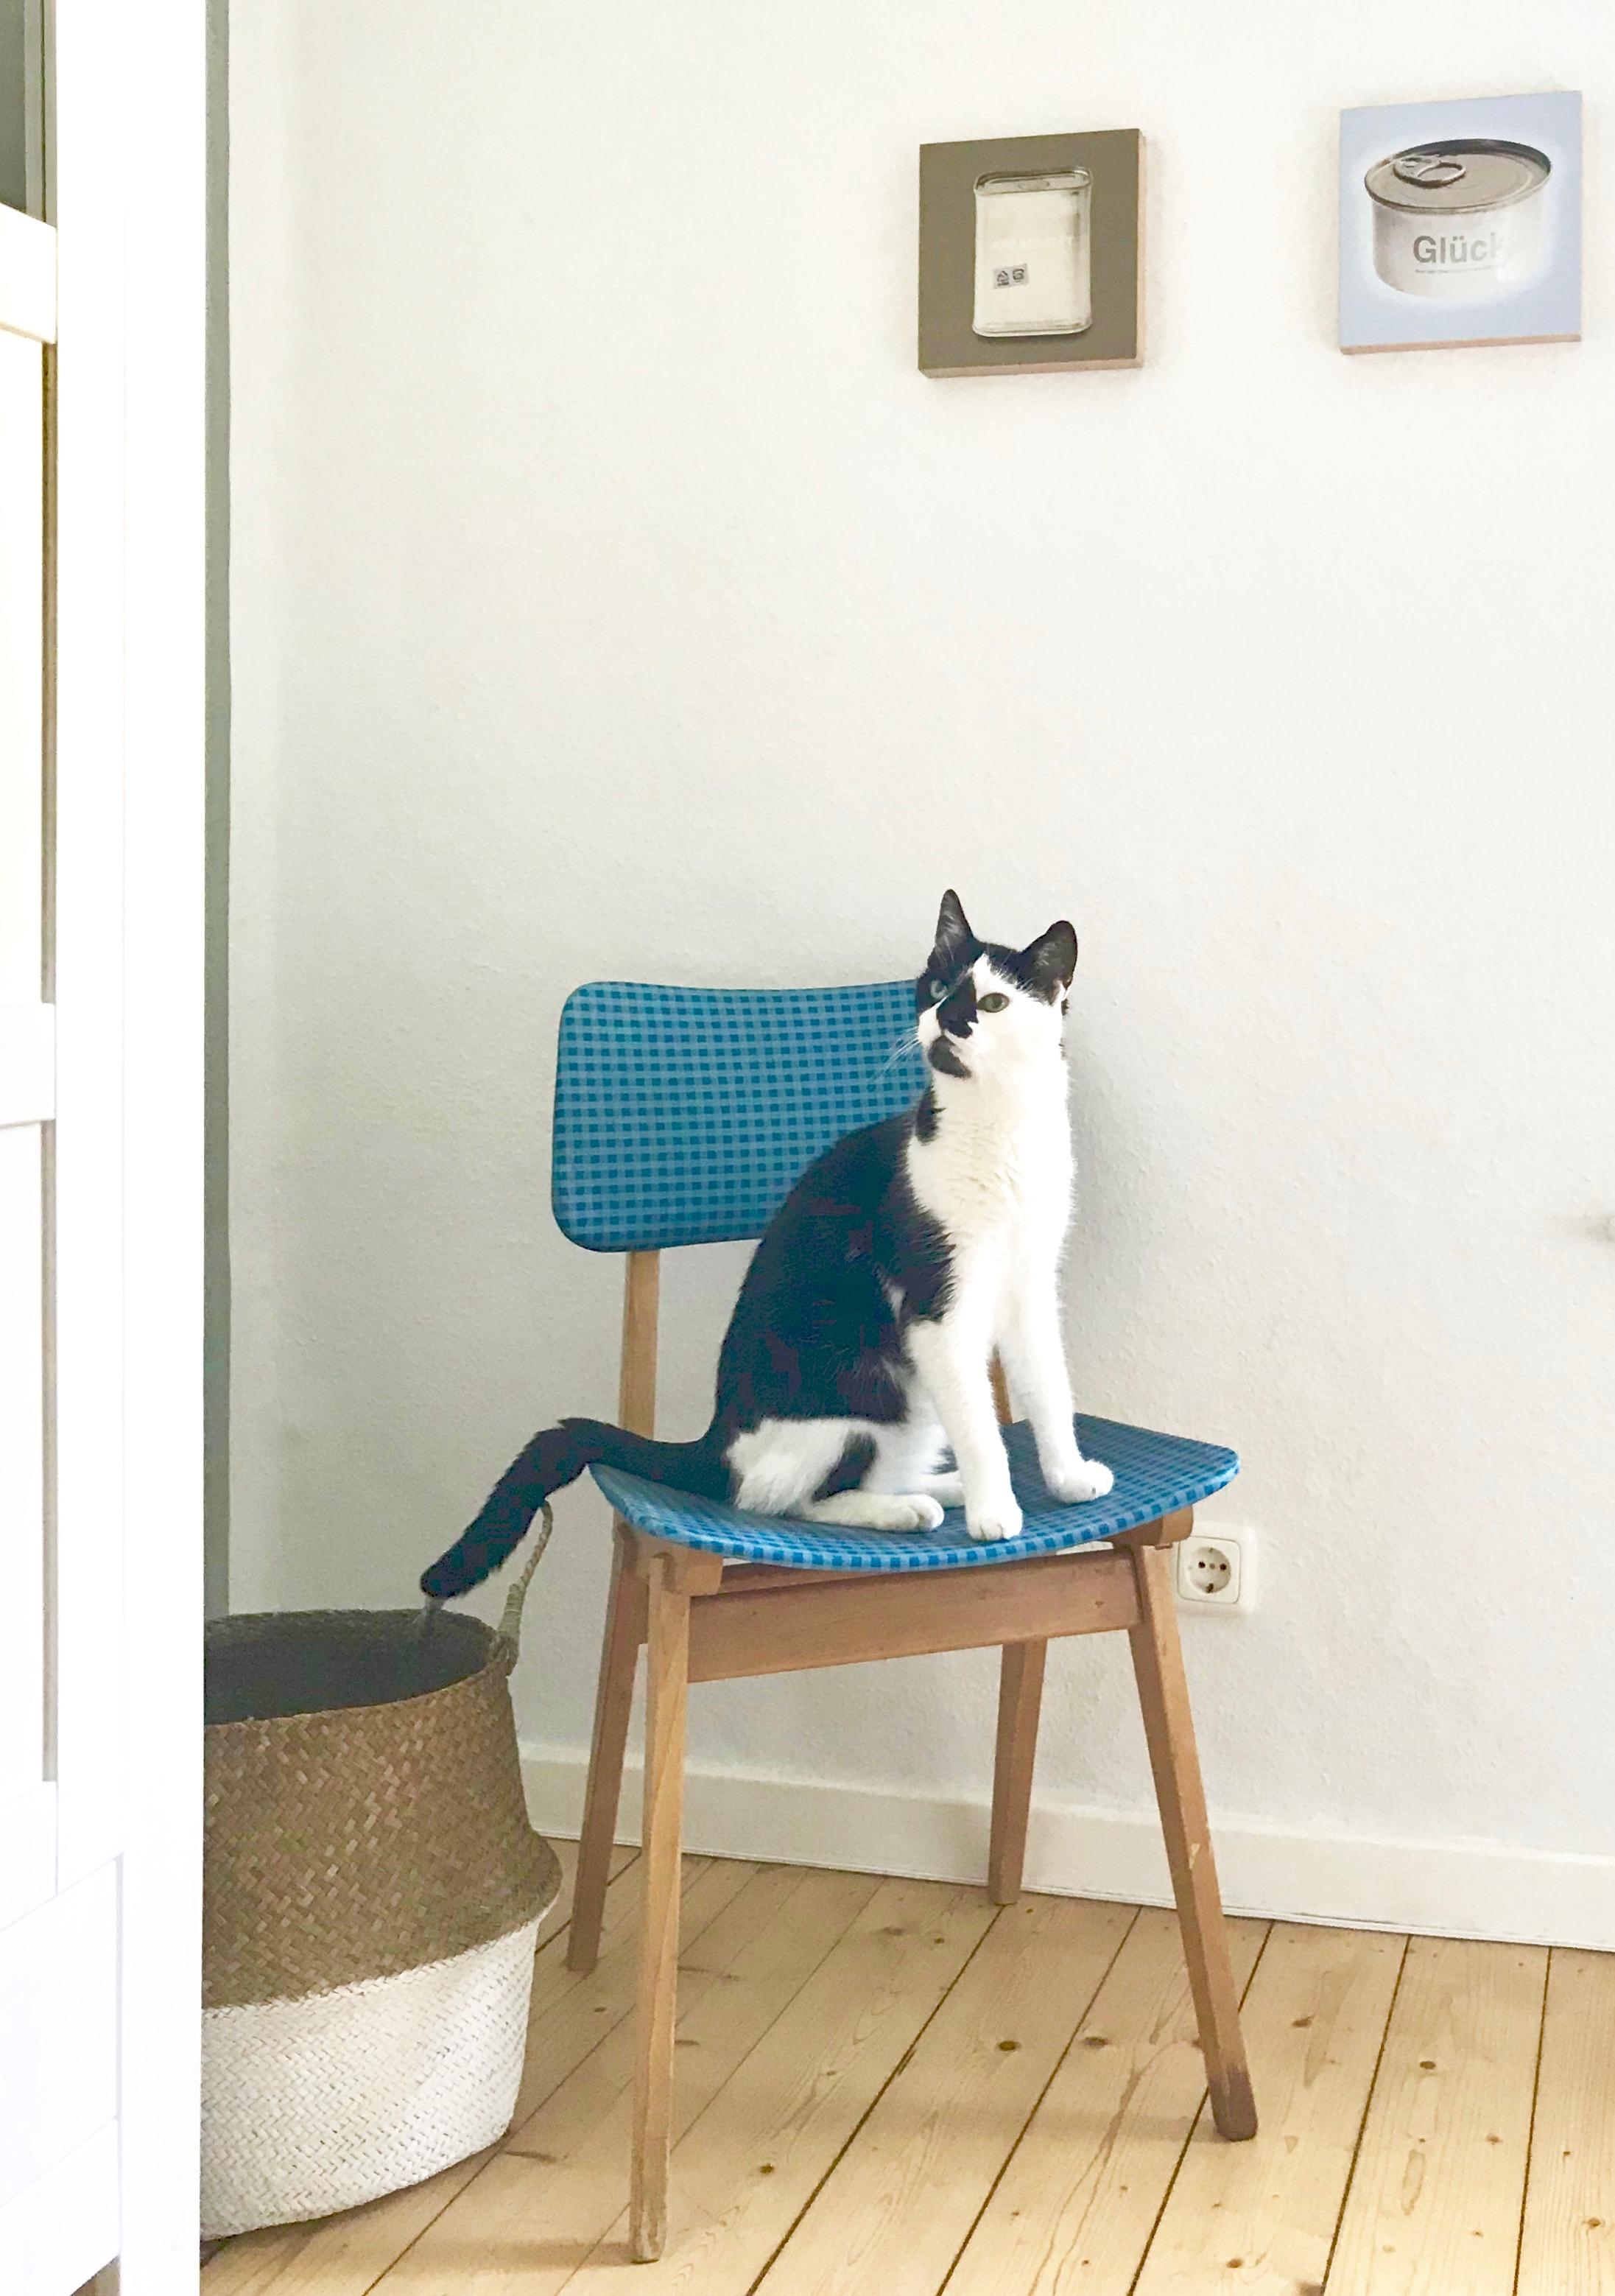 wenn die katze den neuen stuhl erkundet
#retro #vintage #ebaykleinanzeigen piet the #cowcat 